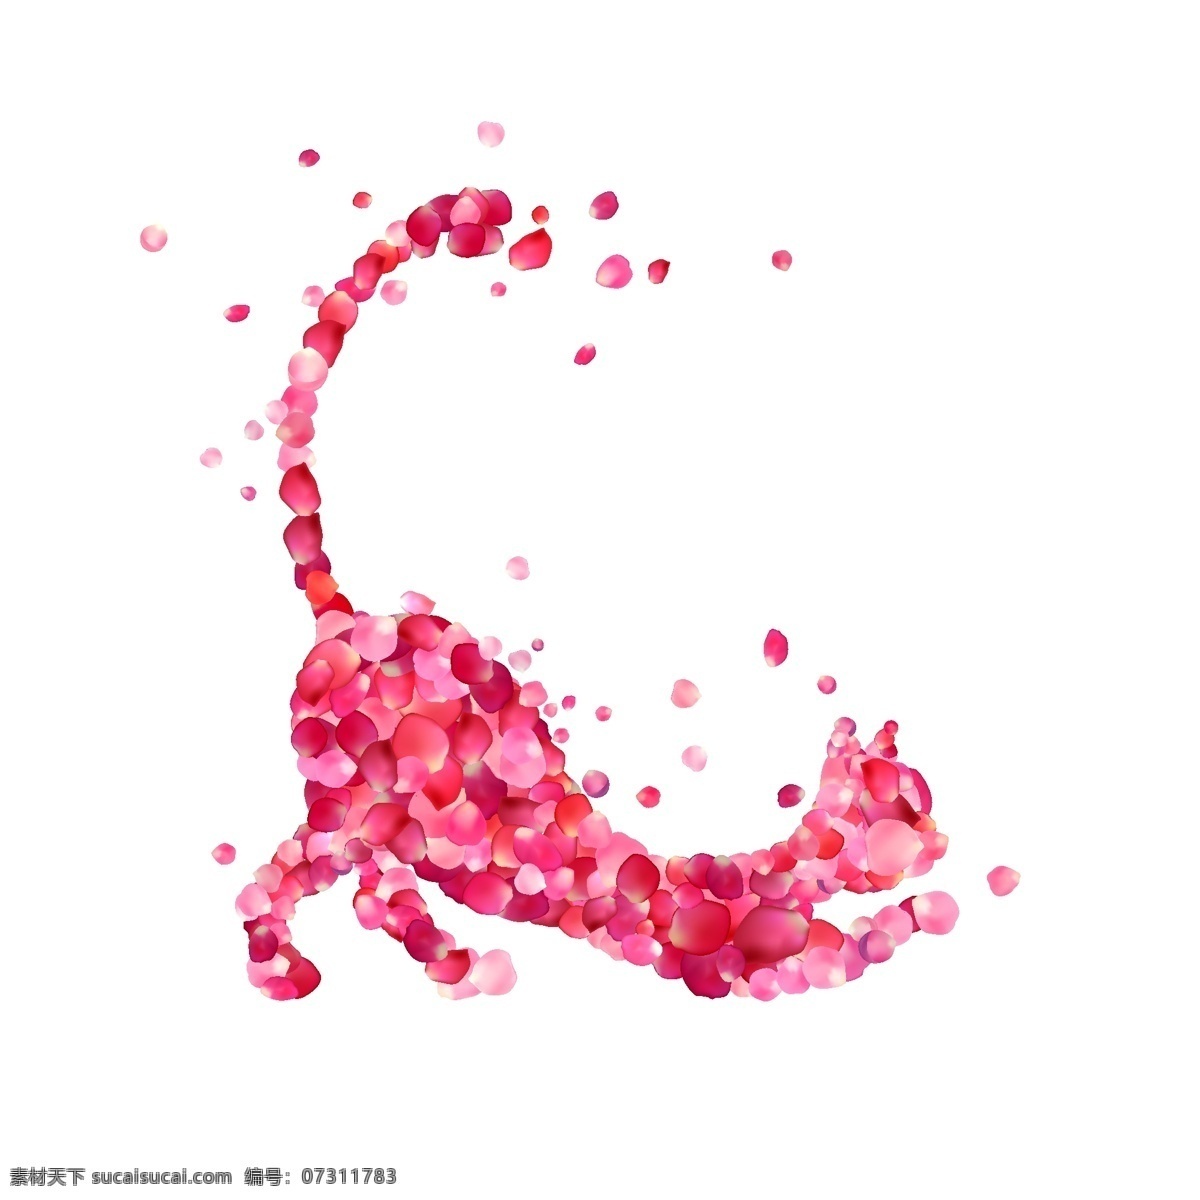 玫瑰 花瓣 组合 猫咪 海报 唯美 设计素材 伸懒腰 粉色 创意 合成 装饰 矢量 源文件